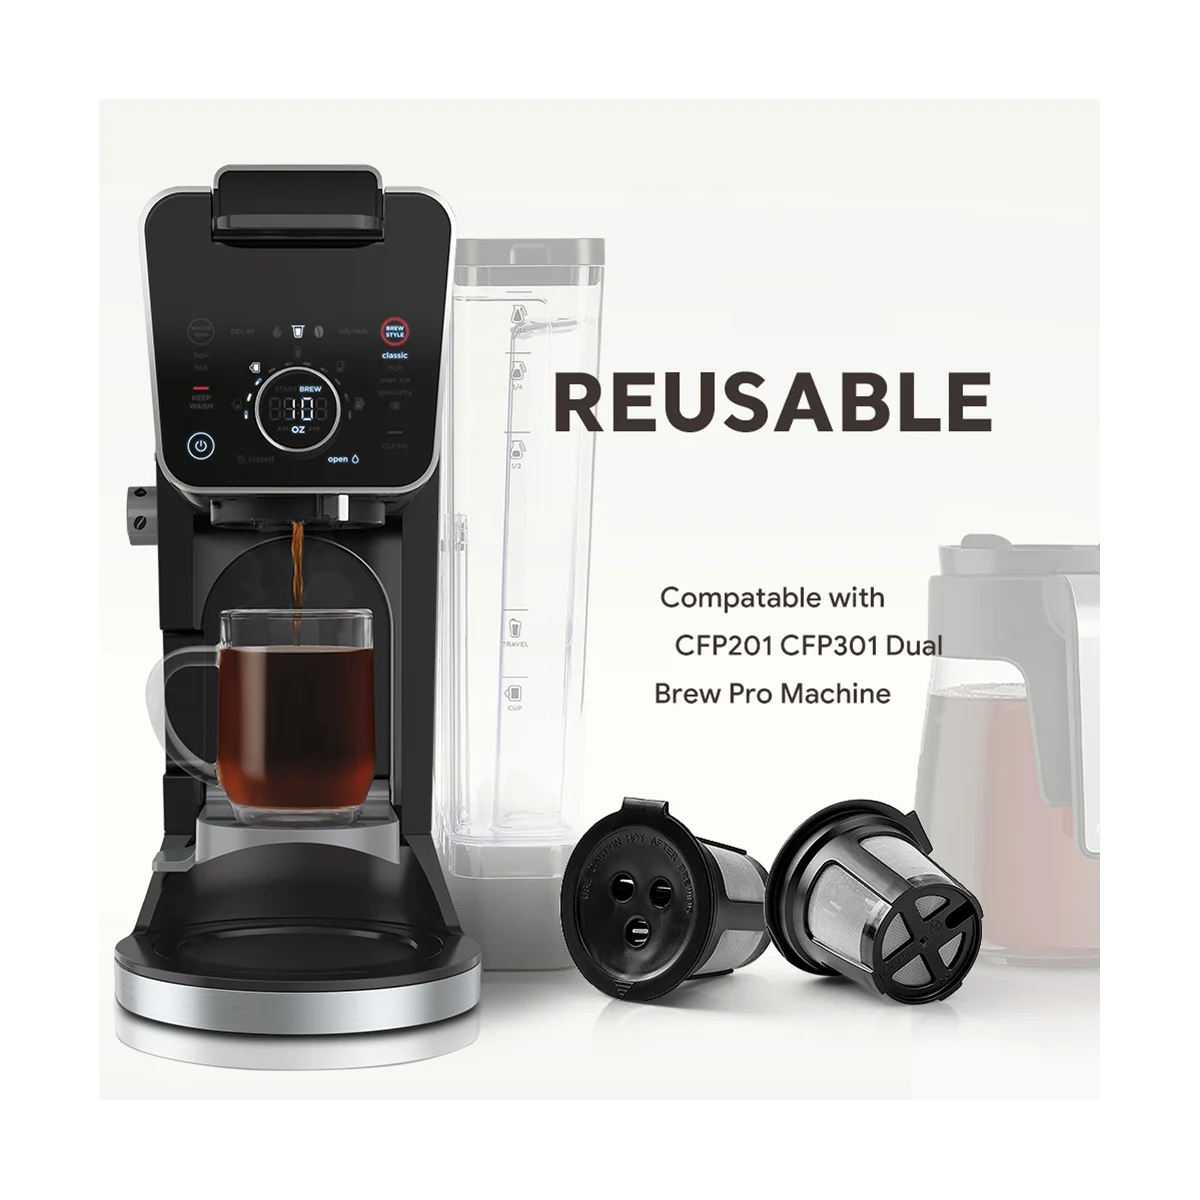 

6PCS Reusable Coffee Capsules for Ninja Dual Brew Espresso K Cup Capsules for Ninja CFP201 CFP301 Machine